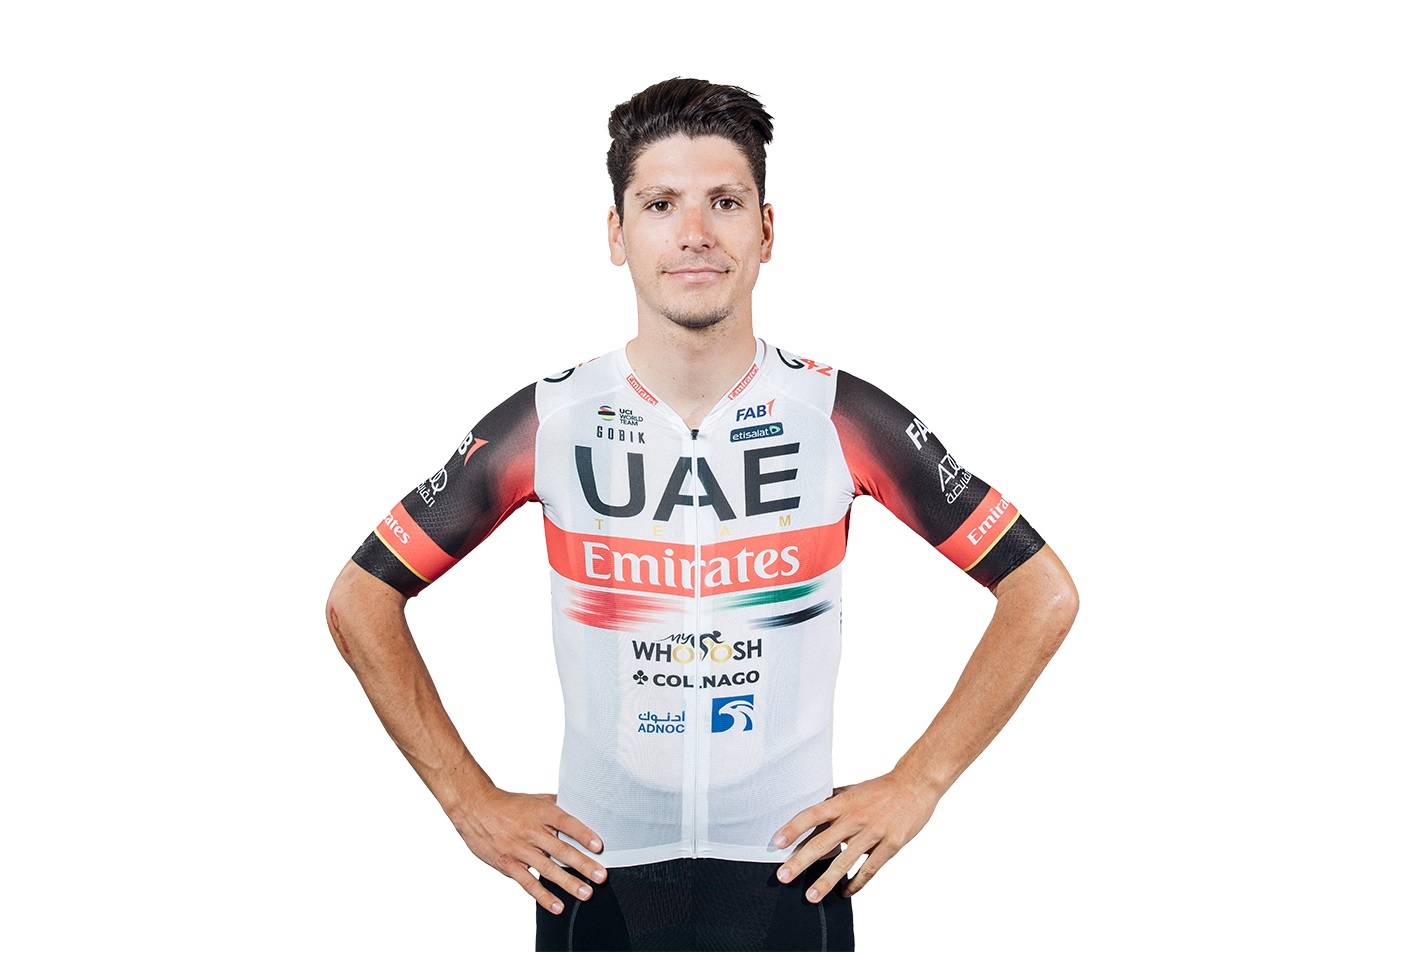 João Almeida przymierza się do trzeciego Giro d’Italia